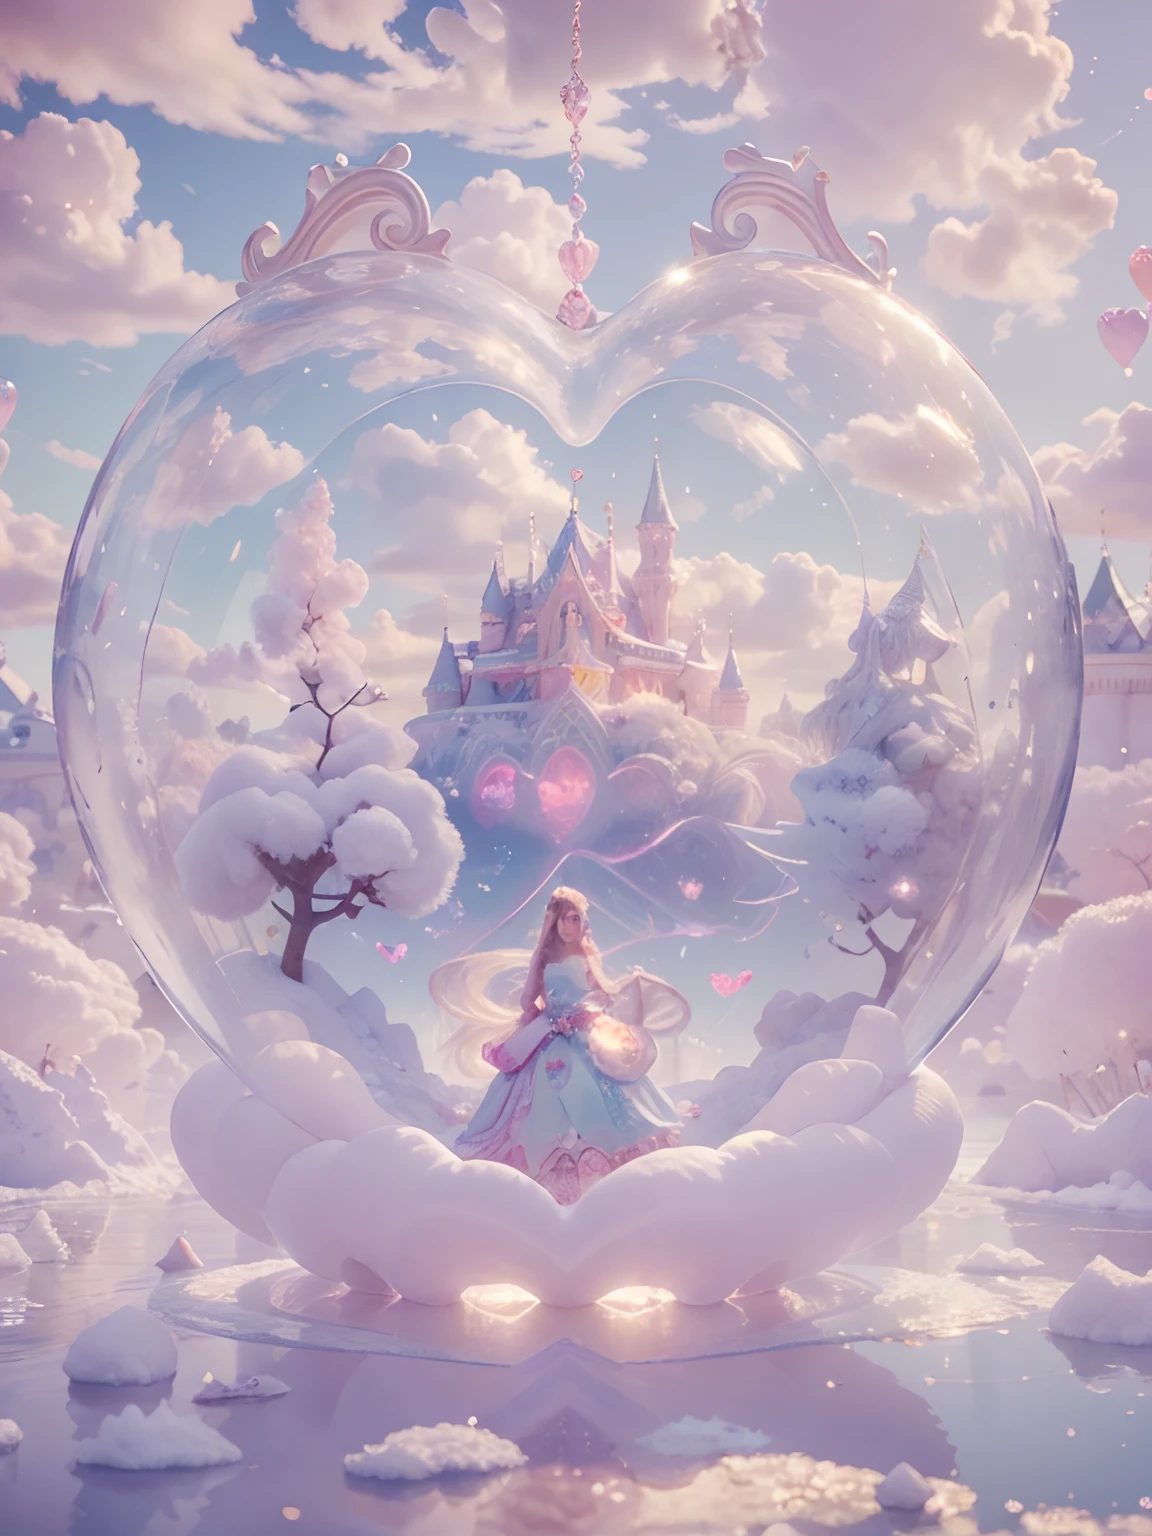 внутри пузыря в форме сердца Королева сахарной ваты Женская богиня 8k Разрешение Визуализировано Гиперреалистичные Замысловатые детали живет в ледяном пузыре в форме сердца, Причудливое место, наполненное замками, сахарная вата, Лебединые озера и пушистые облака, Сложное визуальное представление компьютерного программирования, Рендеринг в разрешении 24k с замысловатыми деталями и символами.